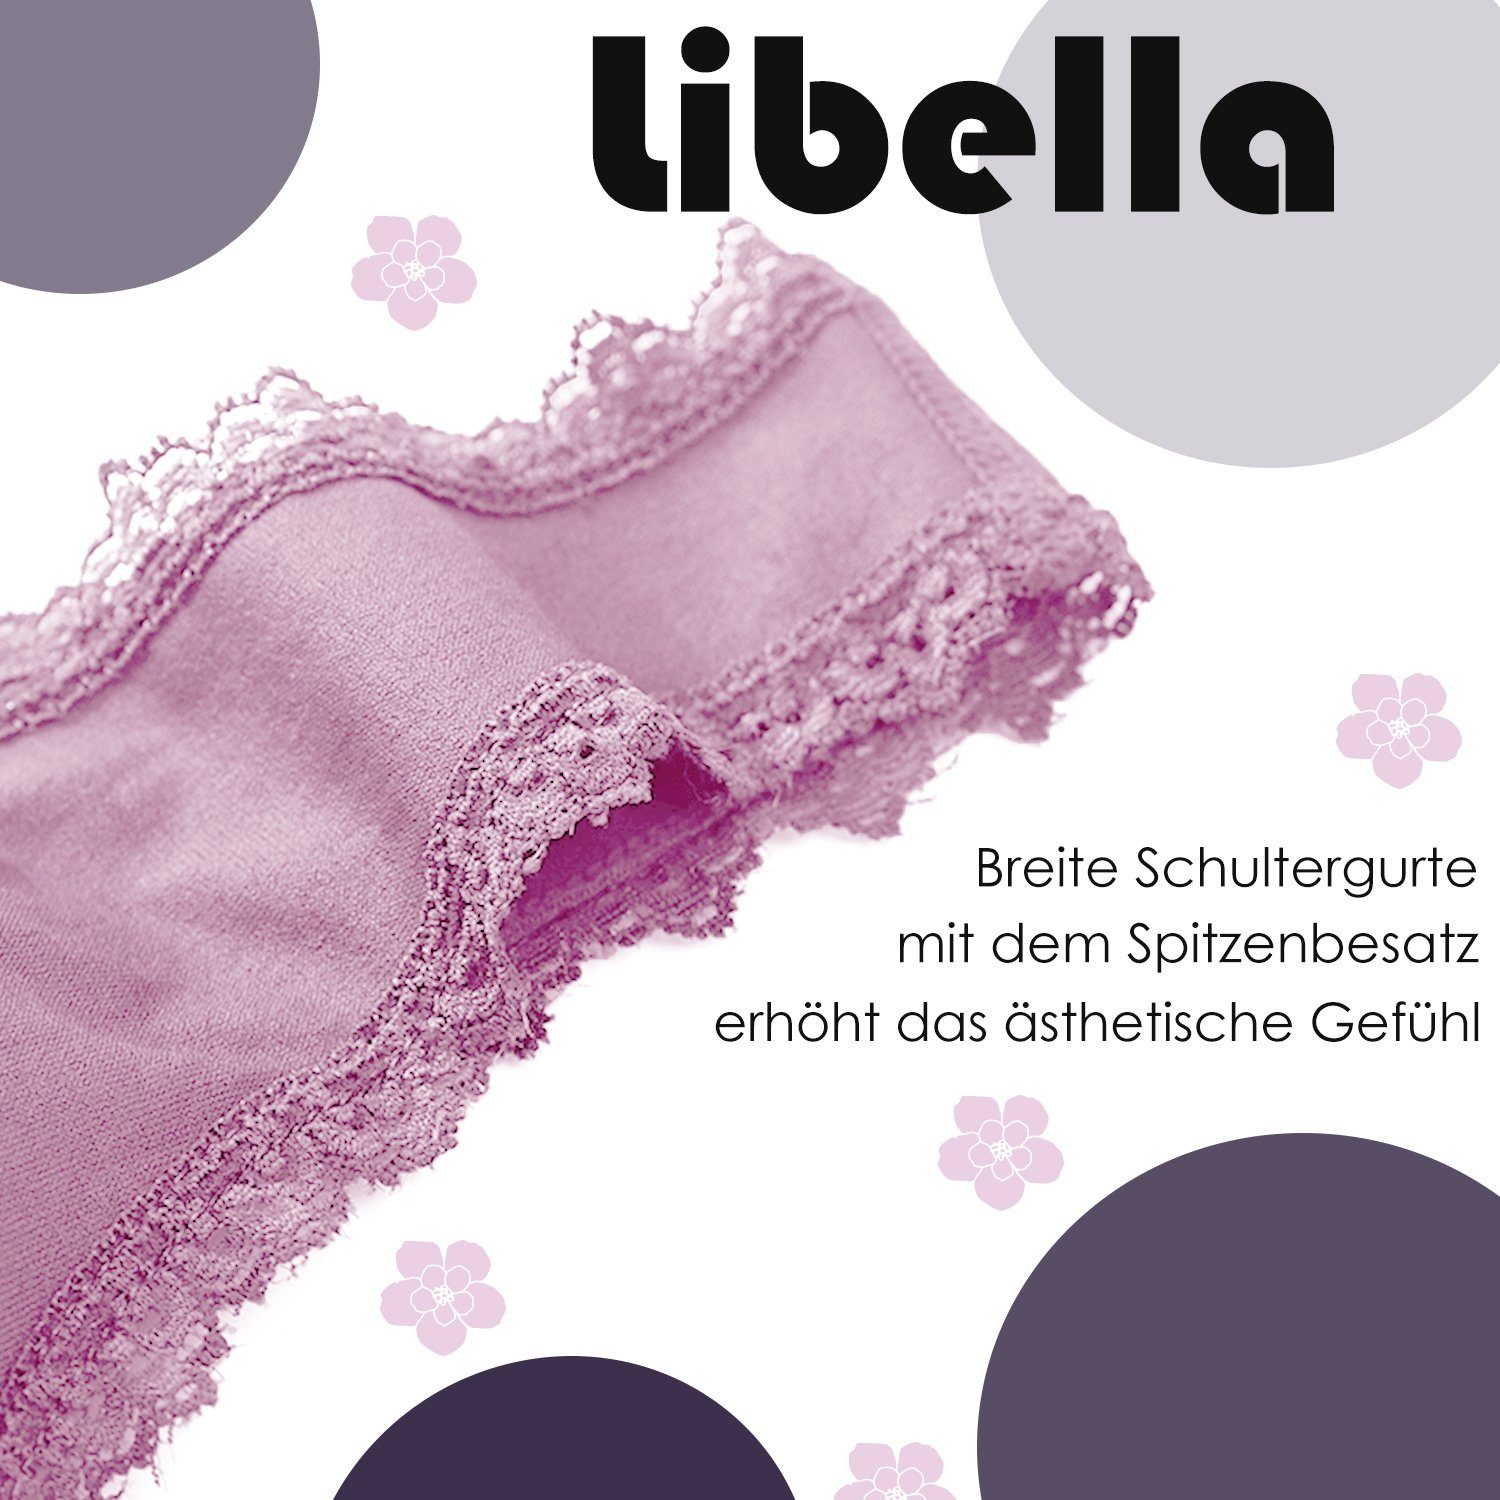 Libella Soft-BH 3717-3747 (3er-Pack) Set-6 Bustier Komfort-BH Set: Bügelloser